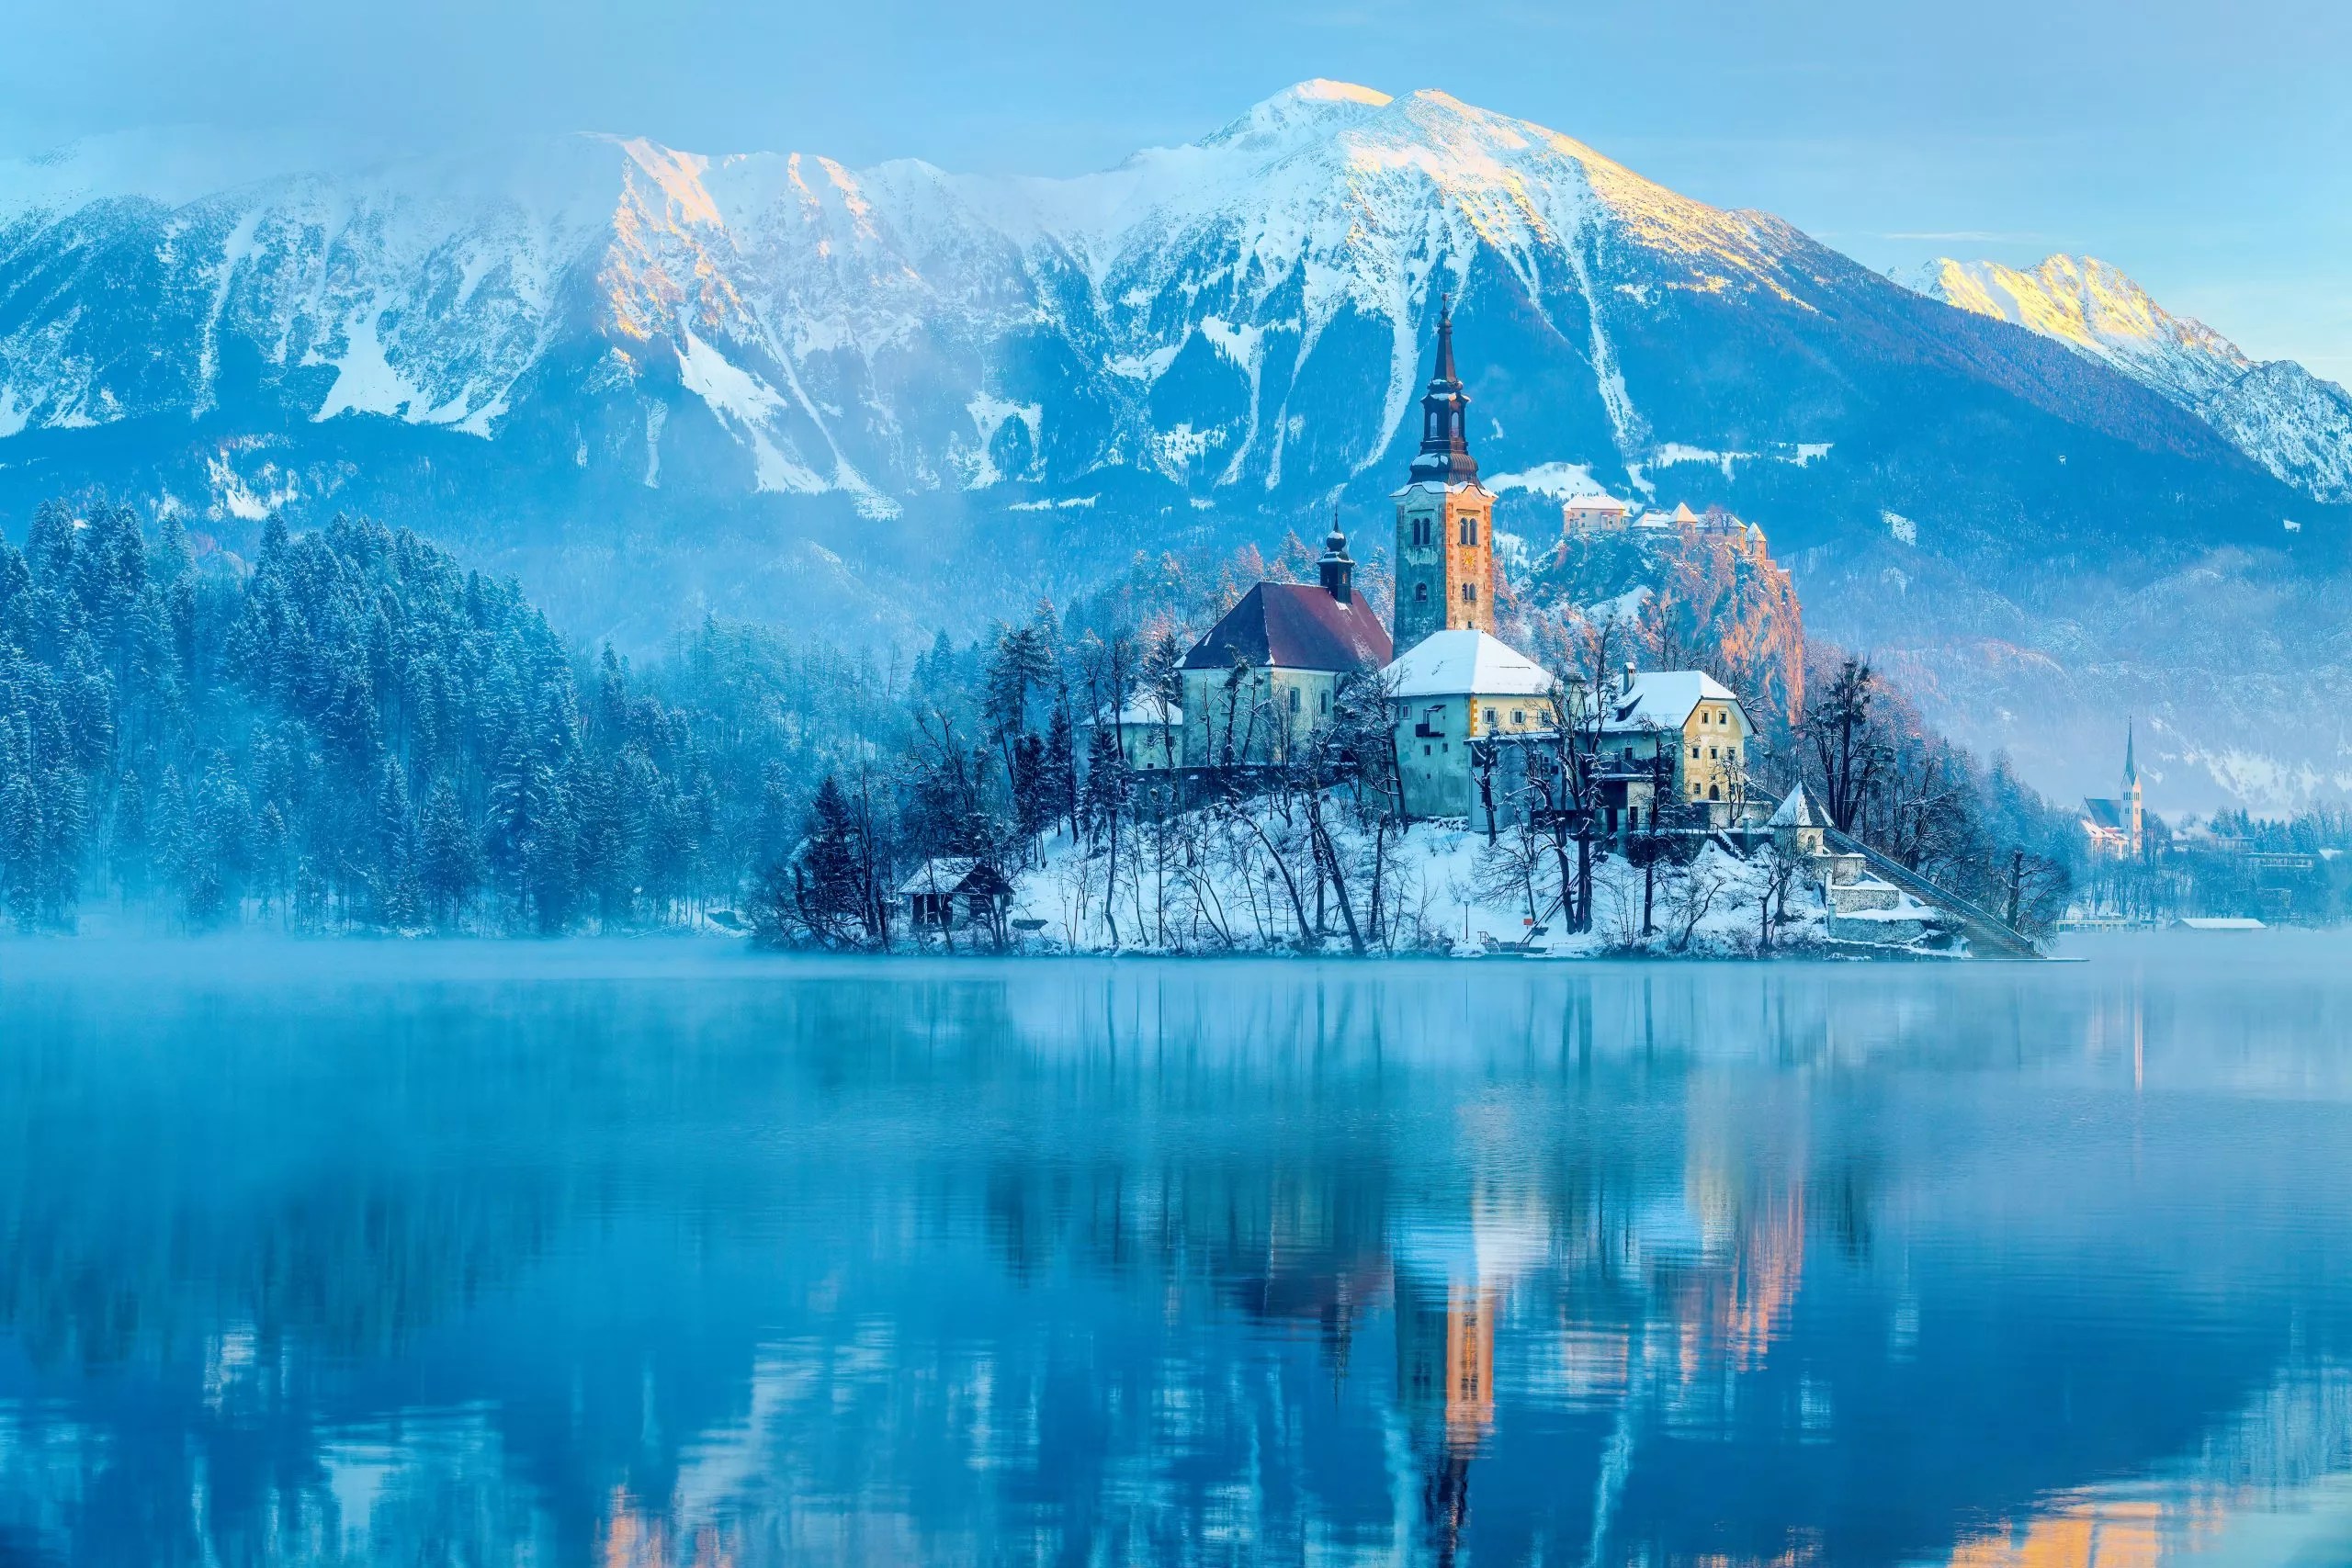 Vinterstämning i Bled